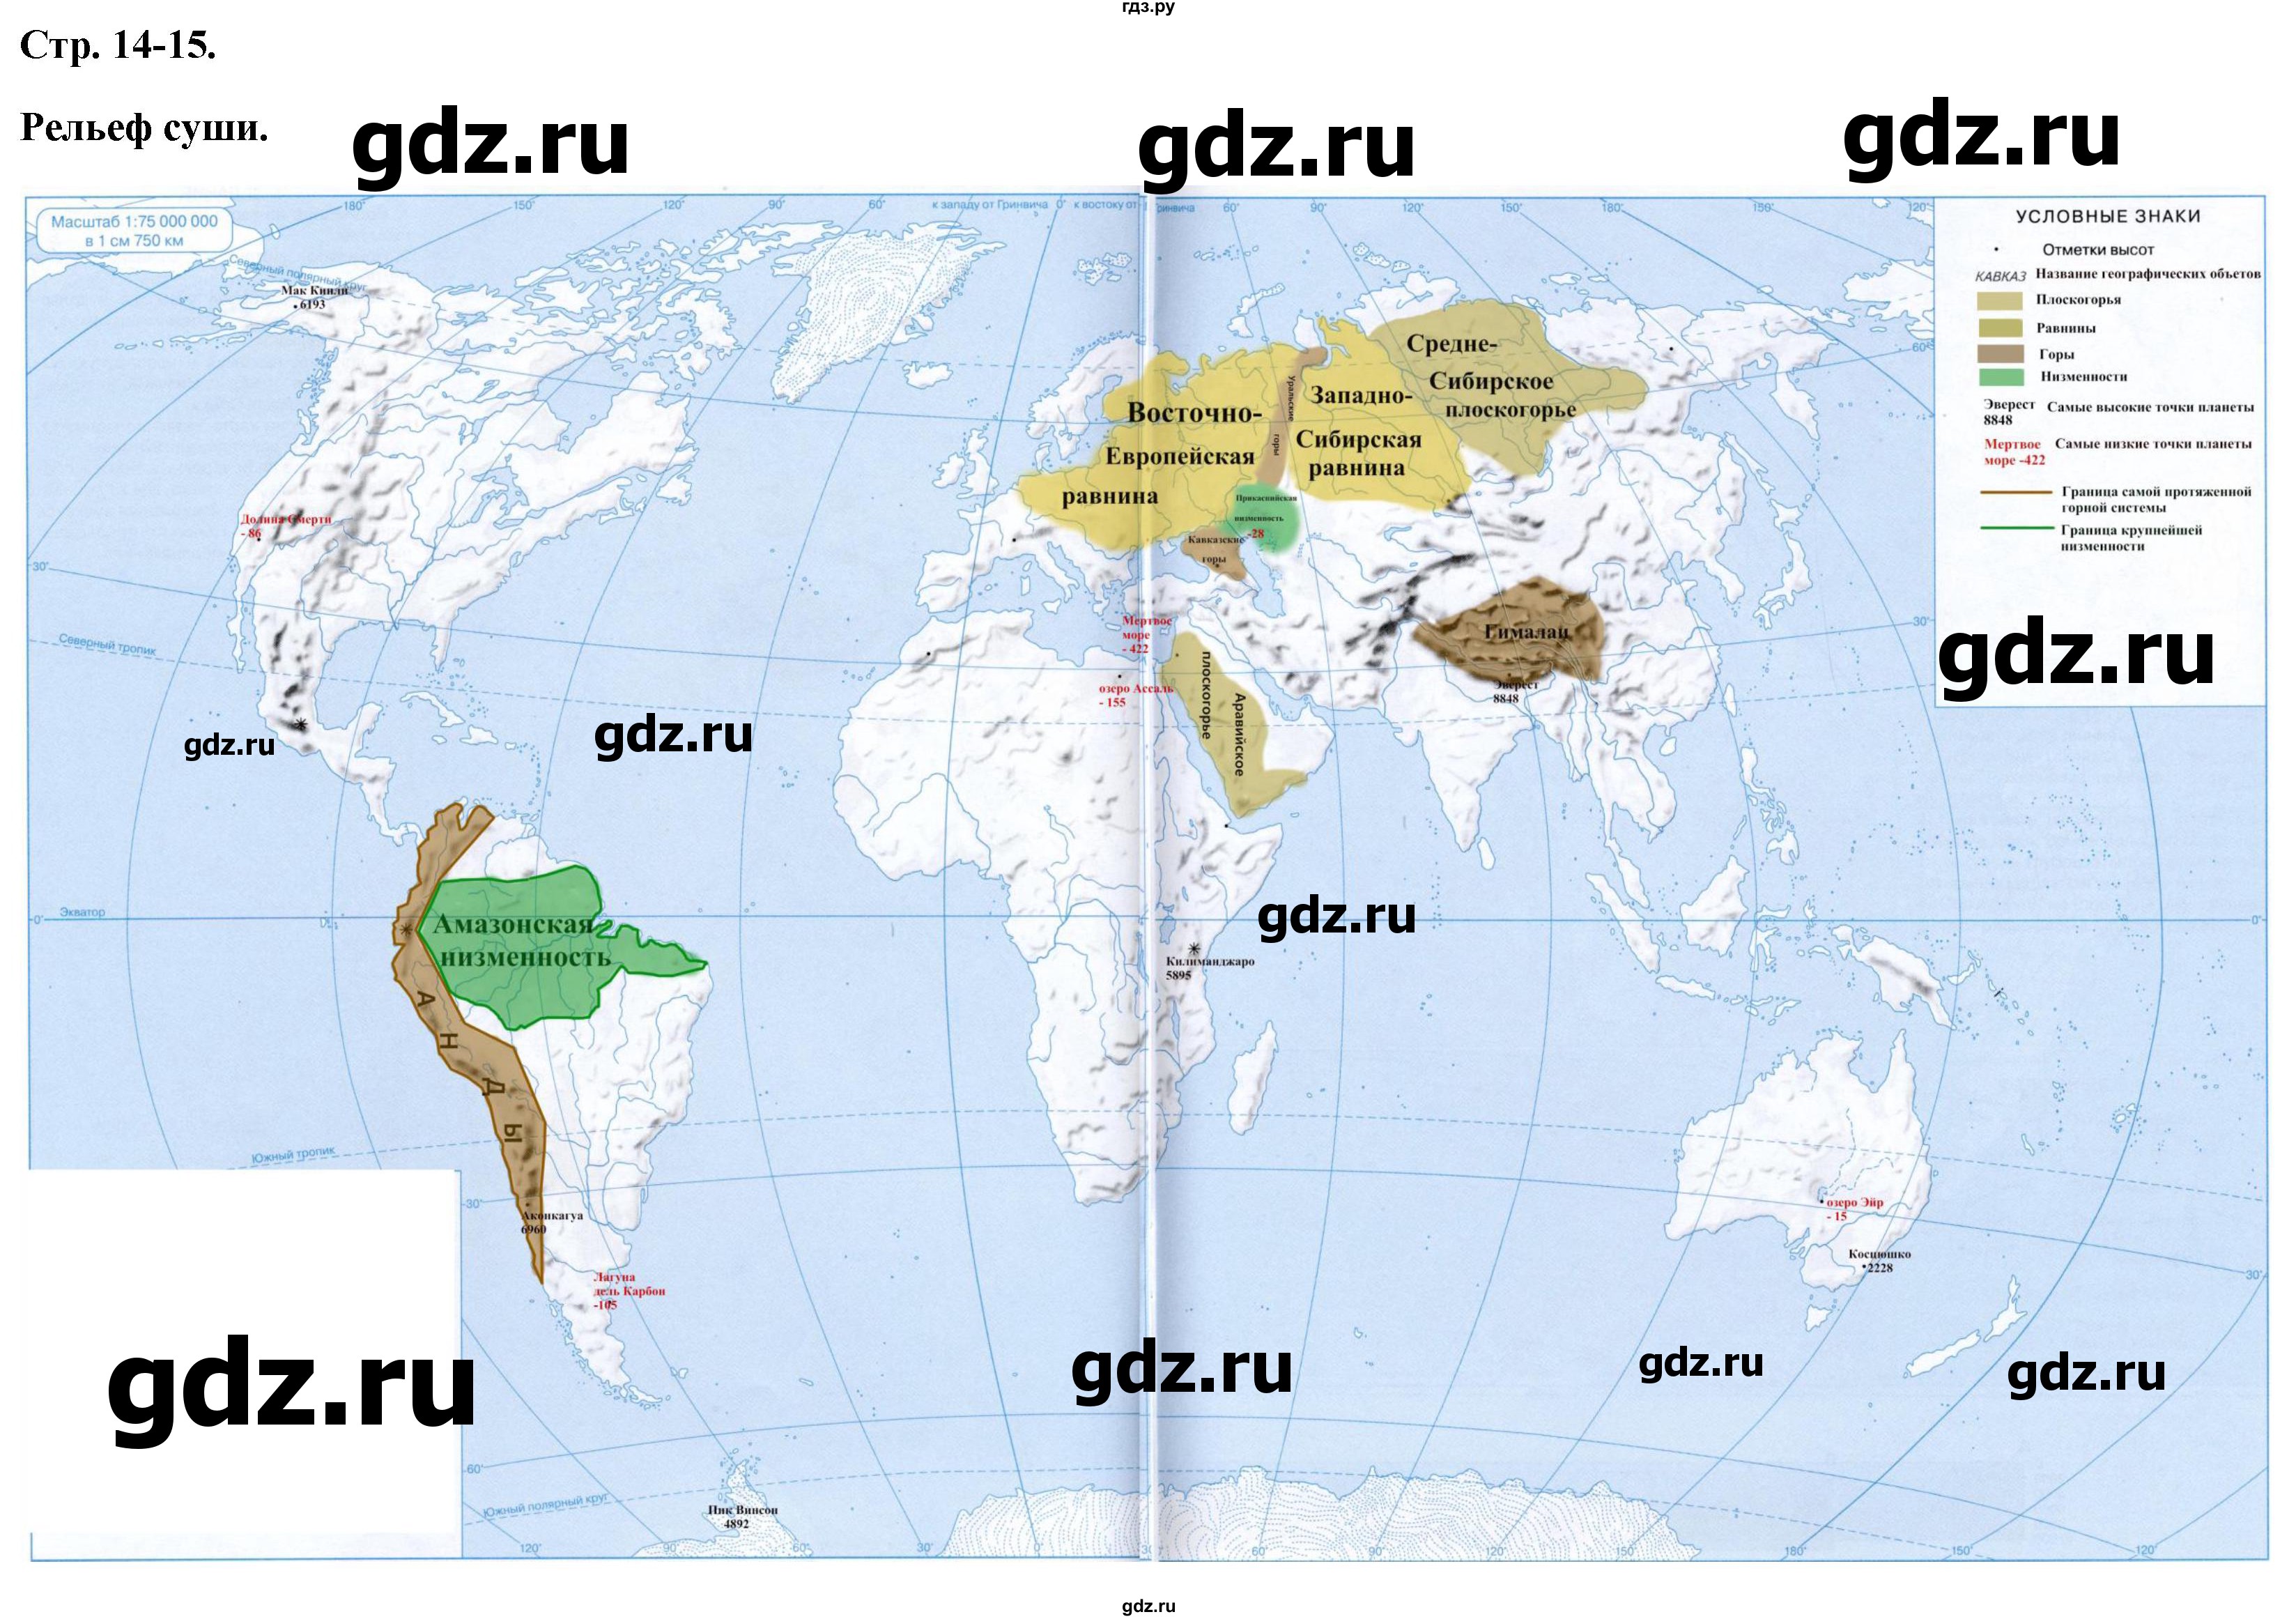 ГДЗ контурные карты стр.14-15 география 6 класс контурные карты Курбский,Курчина